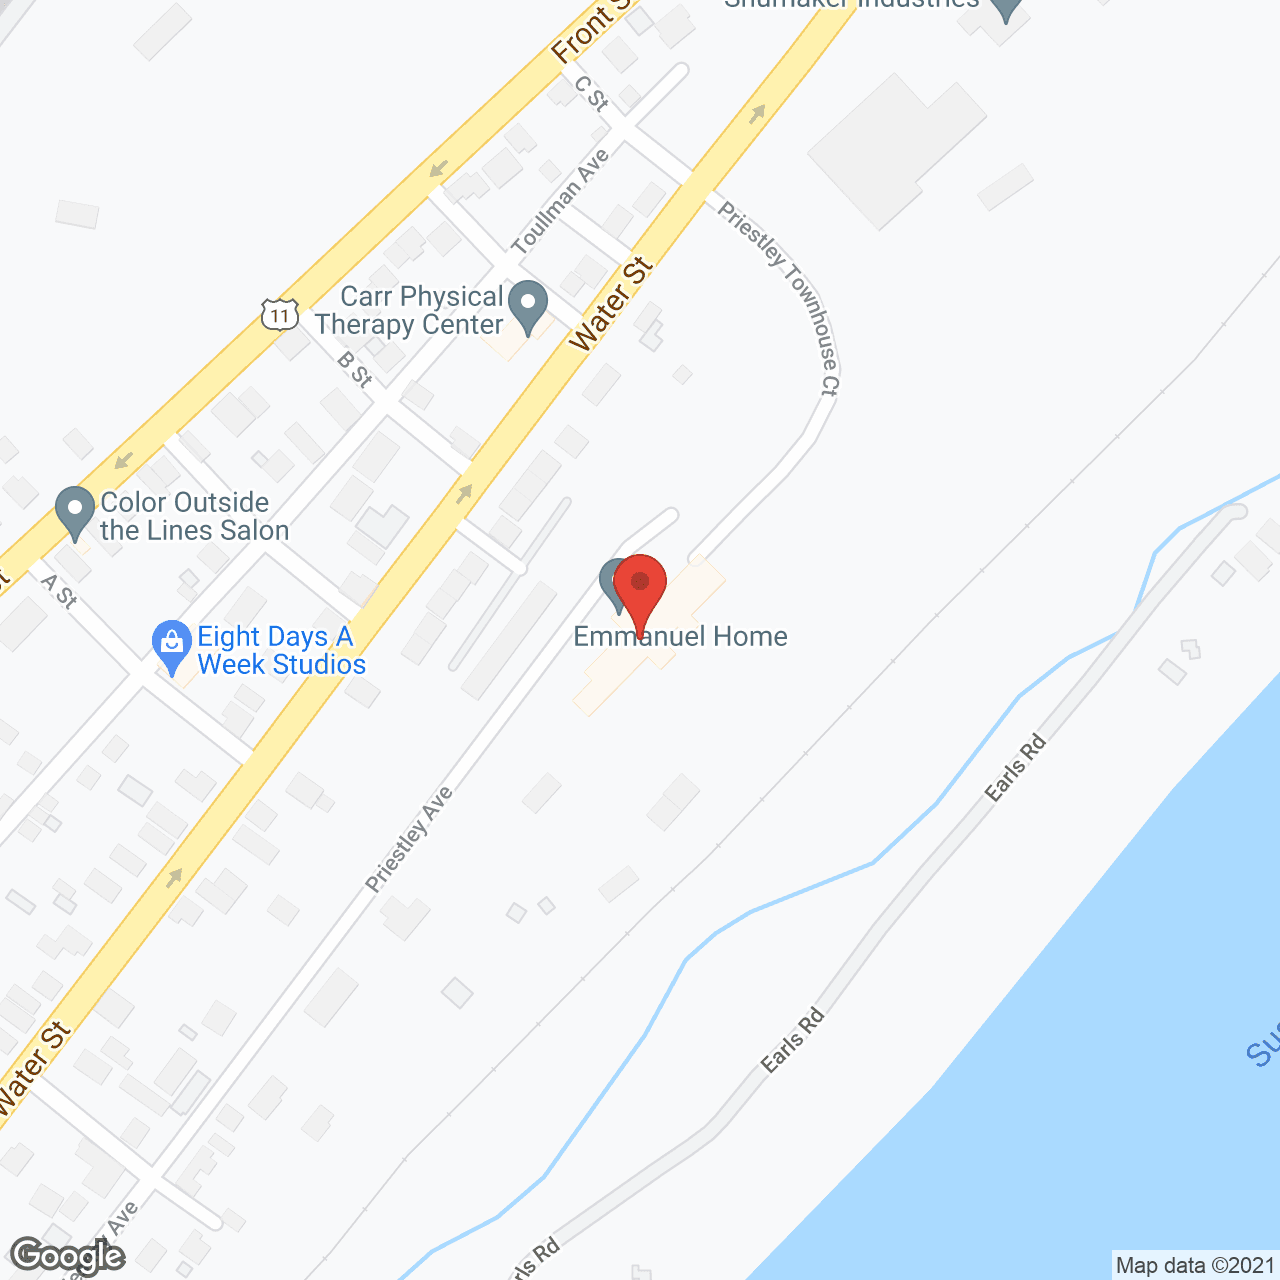 Emmanuel Home in google map